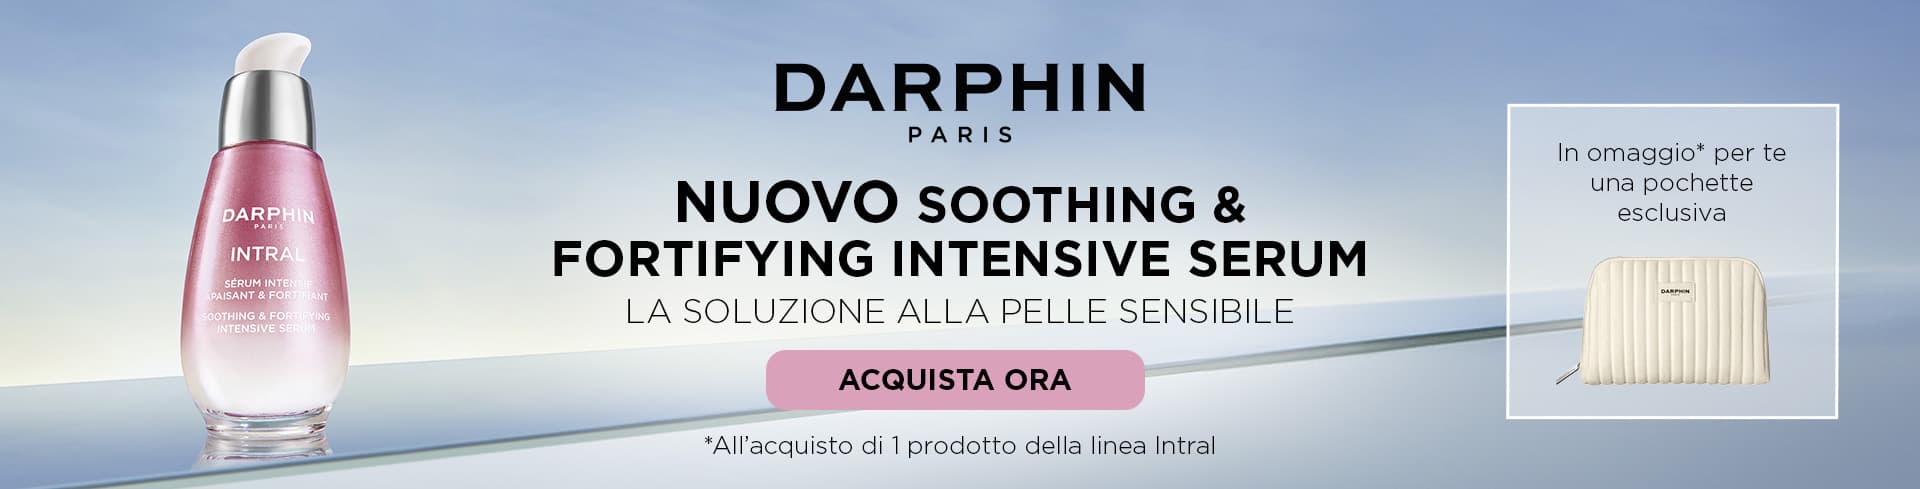 Darphin: Acquista 1 prodotto Intral, ricevi in omaggio la pochette eslcusiva.